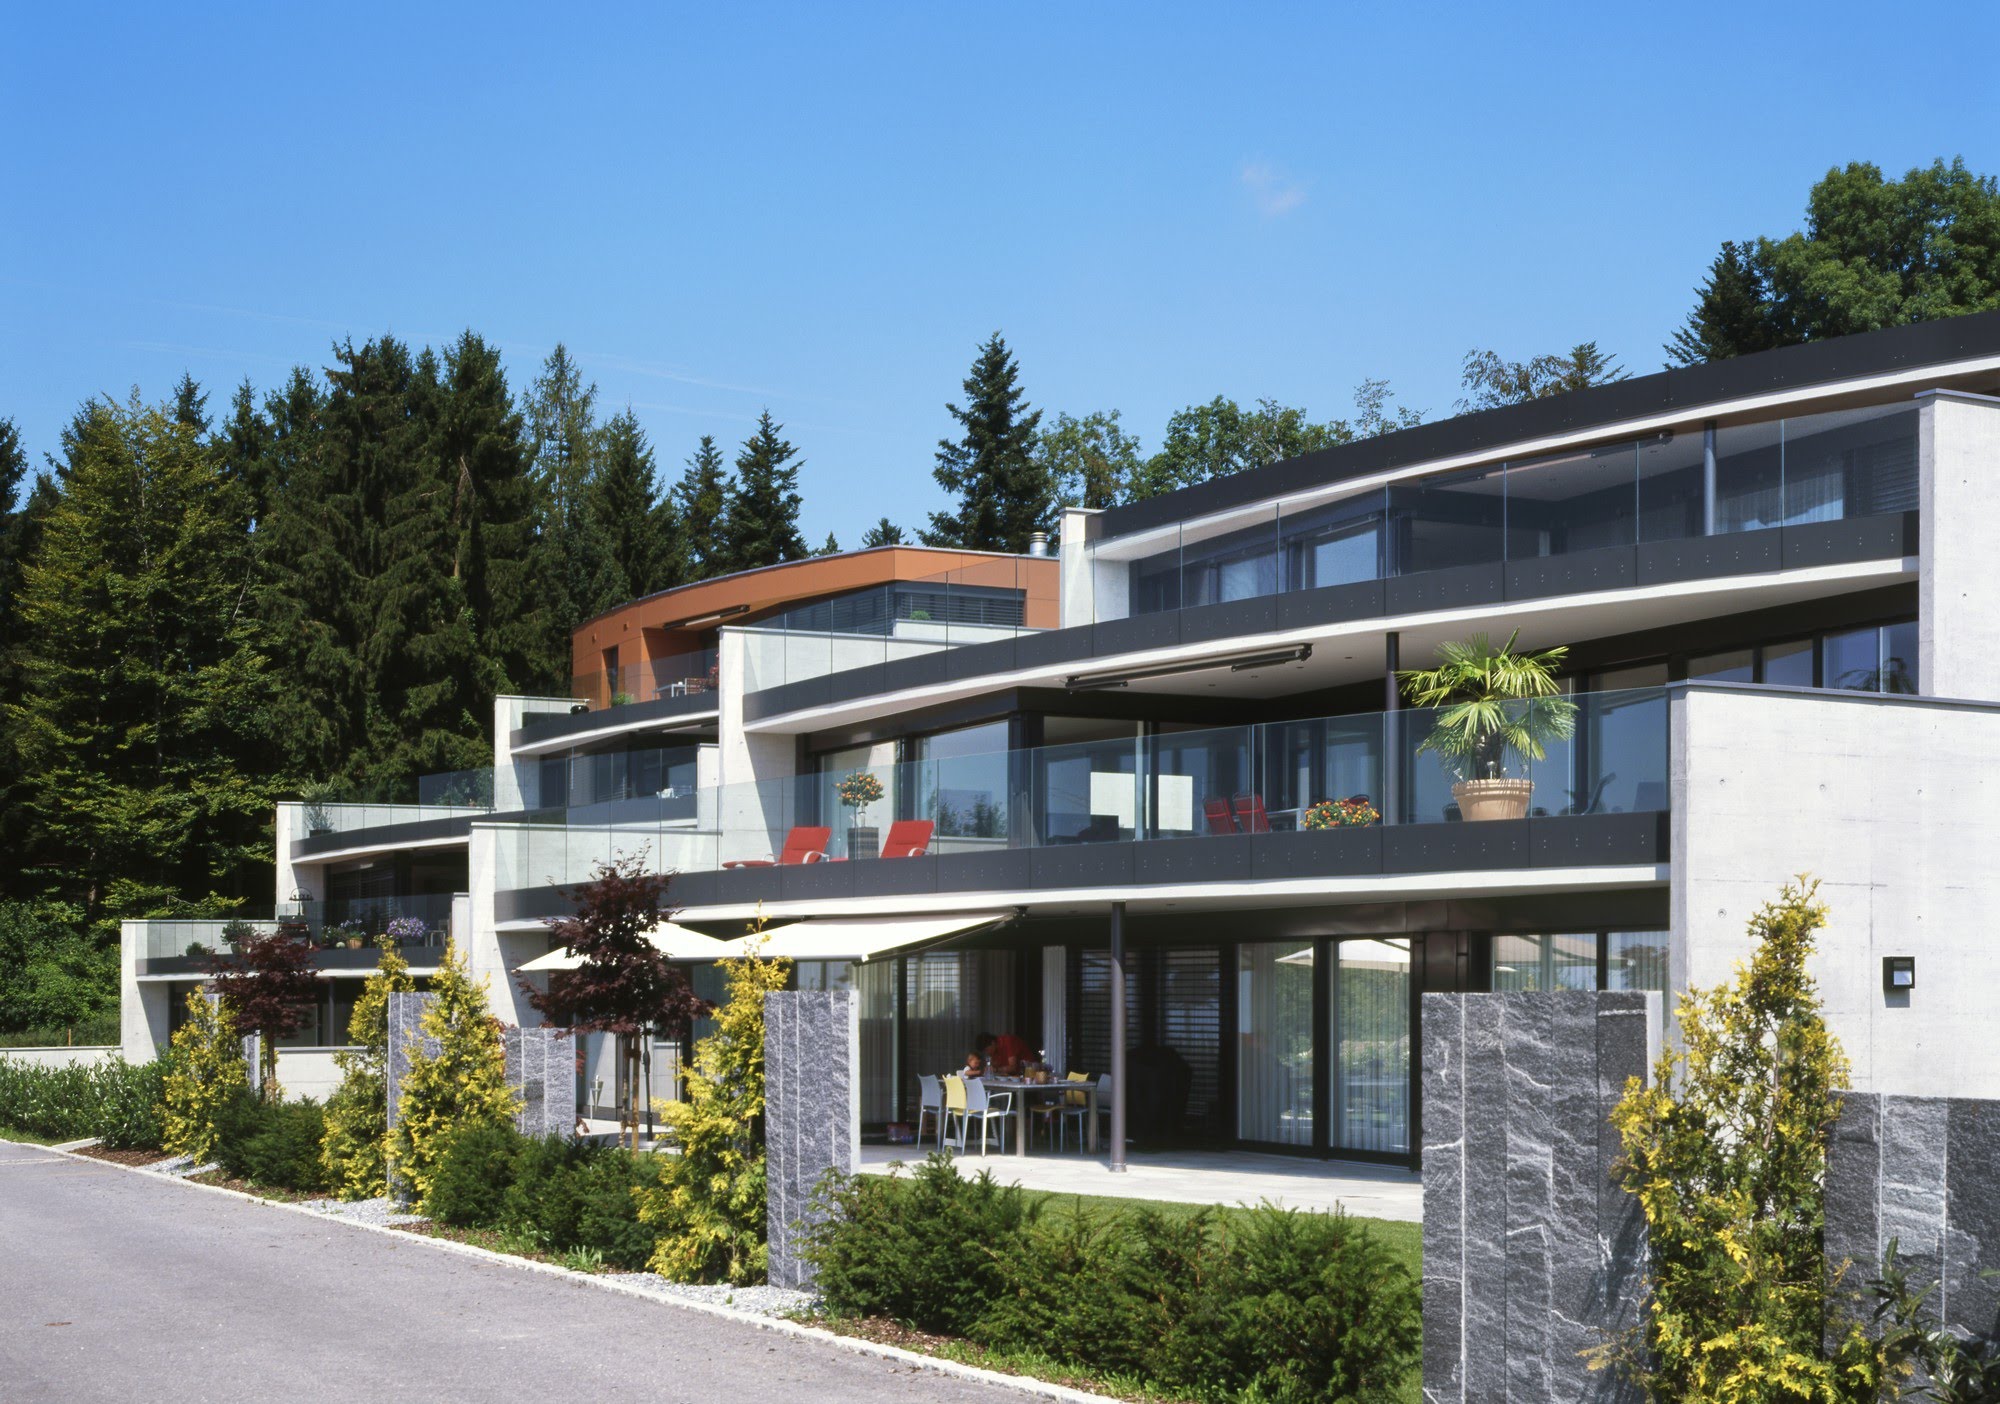 Wohnen MFH Zwei Terrassenhäuser am Tannberg Architektur,Wohnungsbau,Wohnhäuser,Einfamilienhäuser,Mehrfamilienhäuser